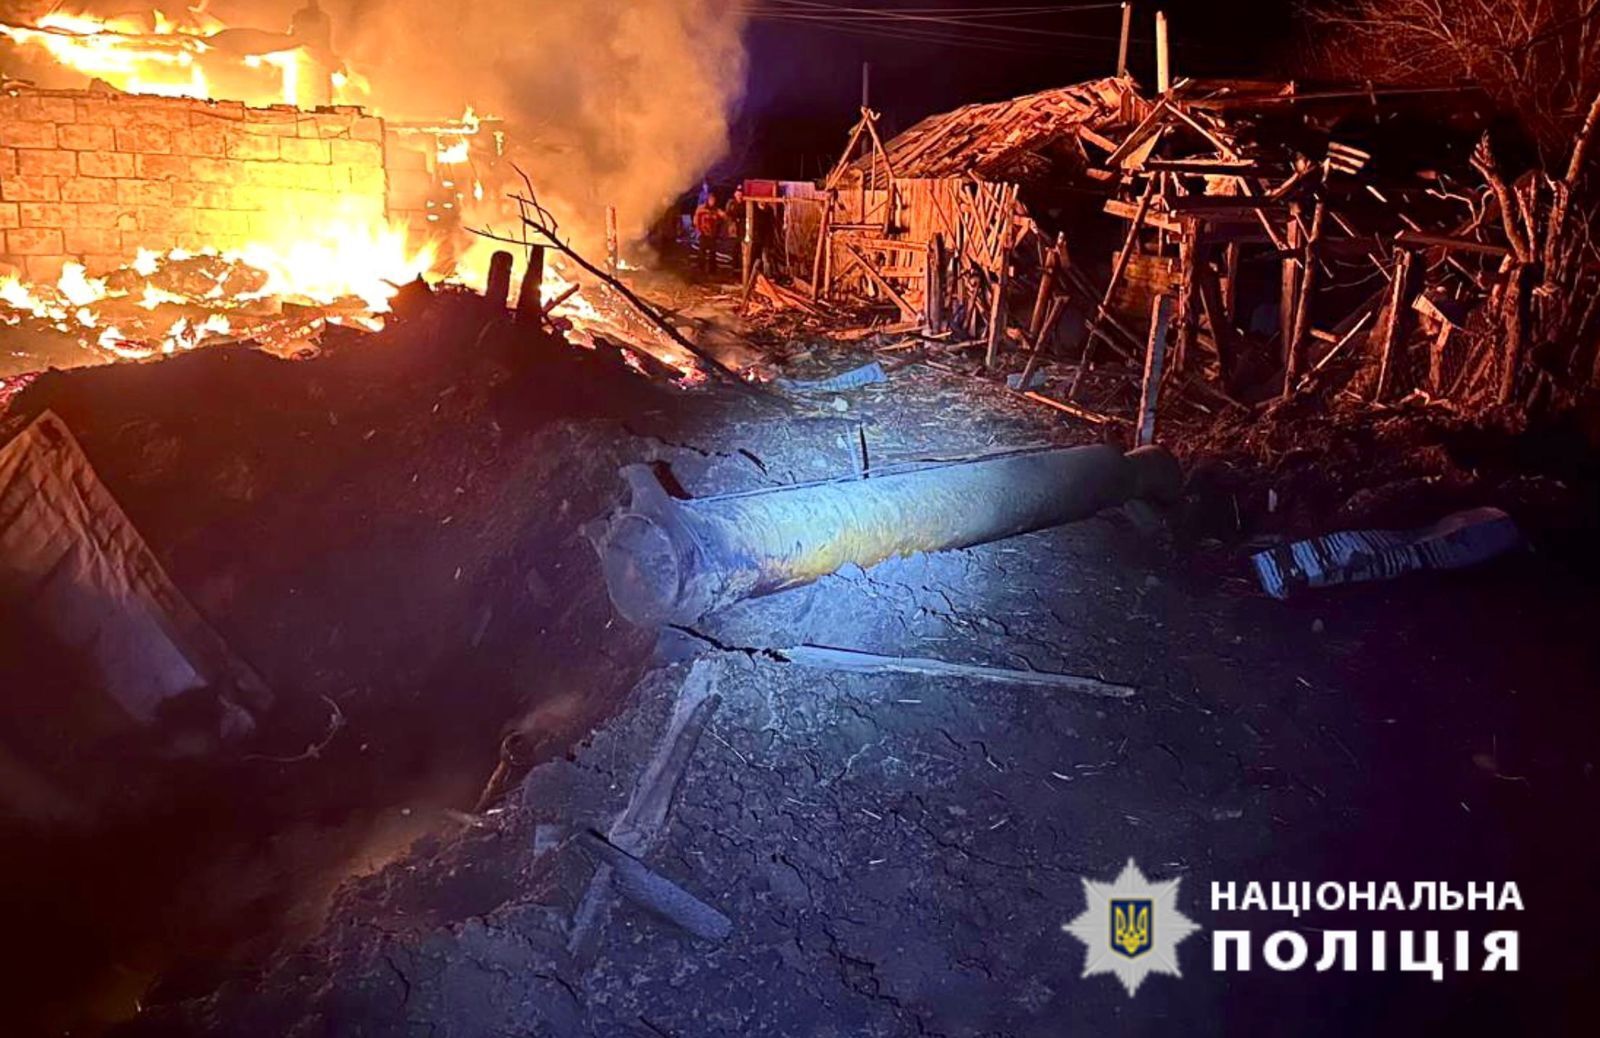 Успели выбежать из горящего дома: на Черниговщине семья чудом выжила во время ракетного удара, но потеряла дом. Фото